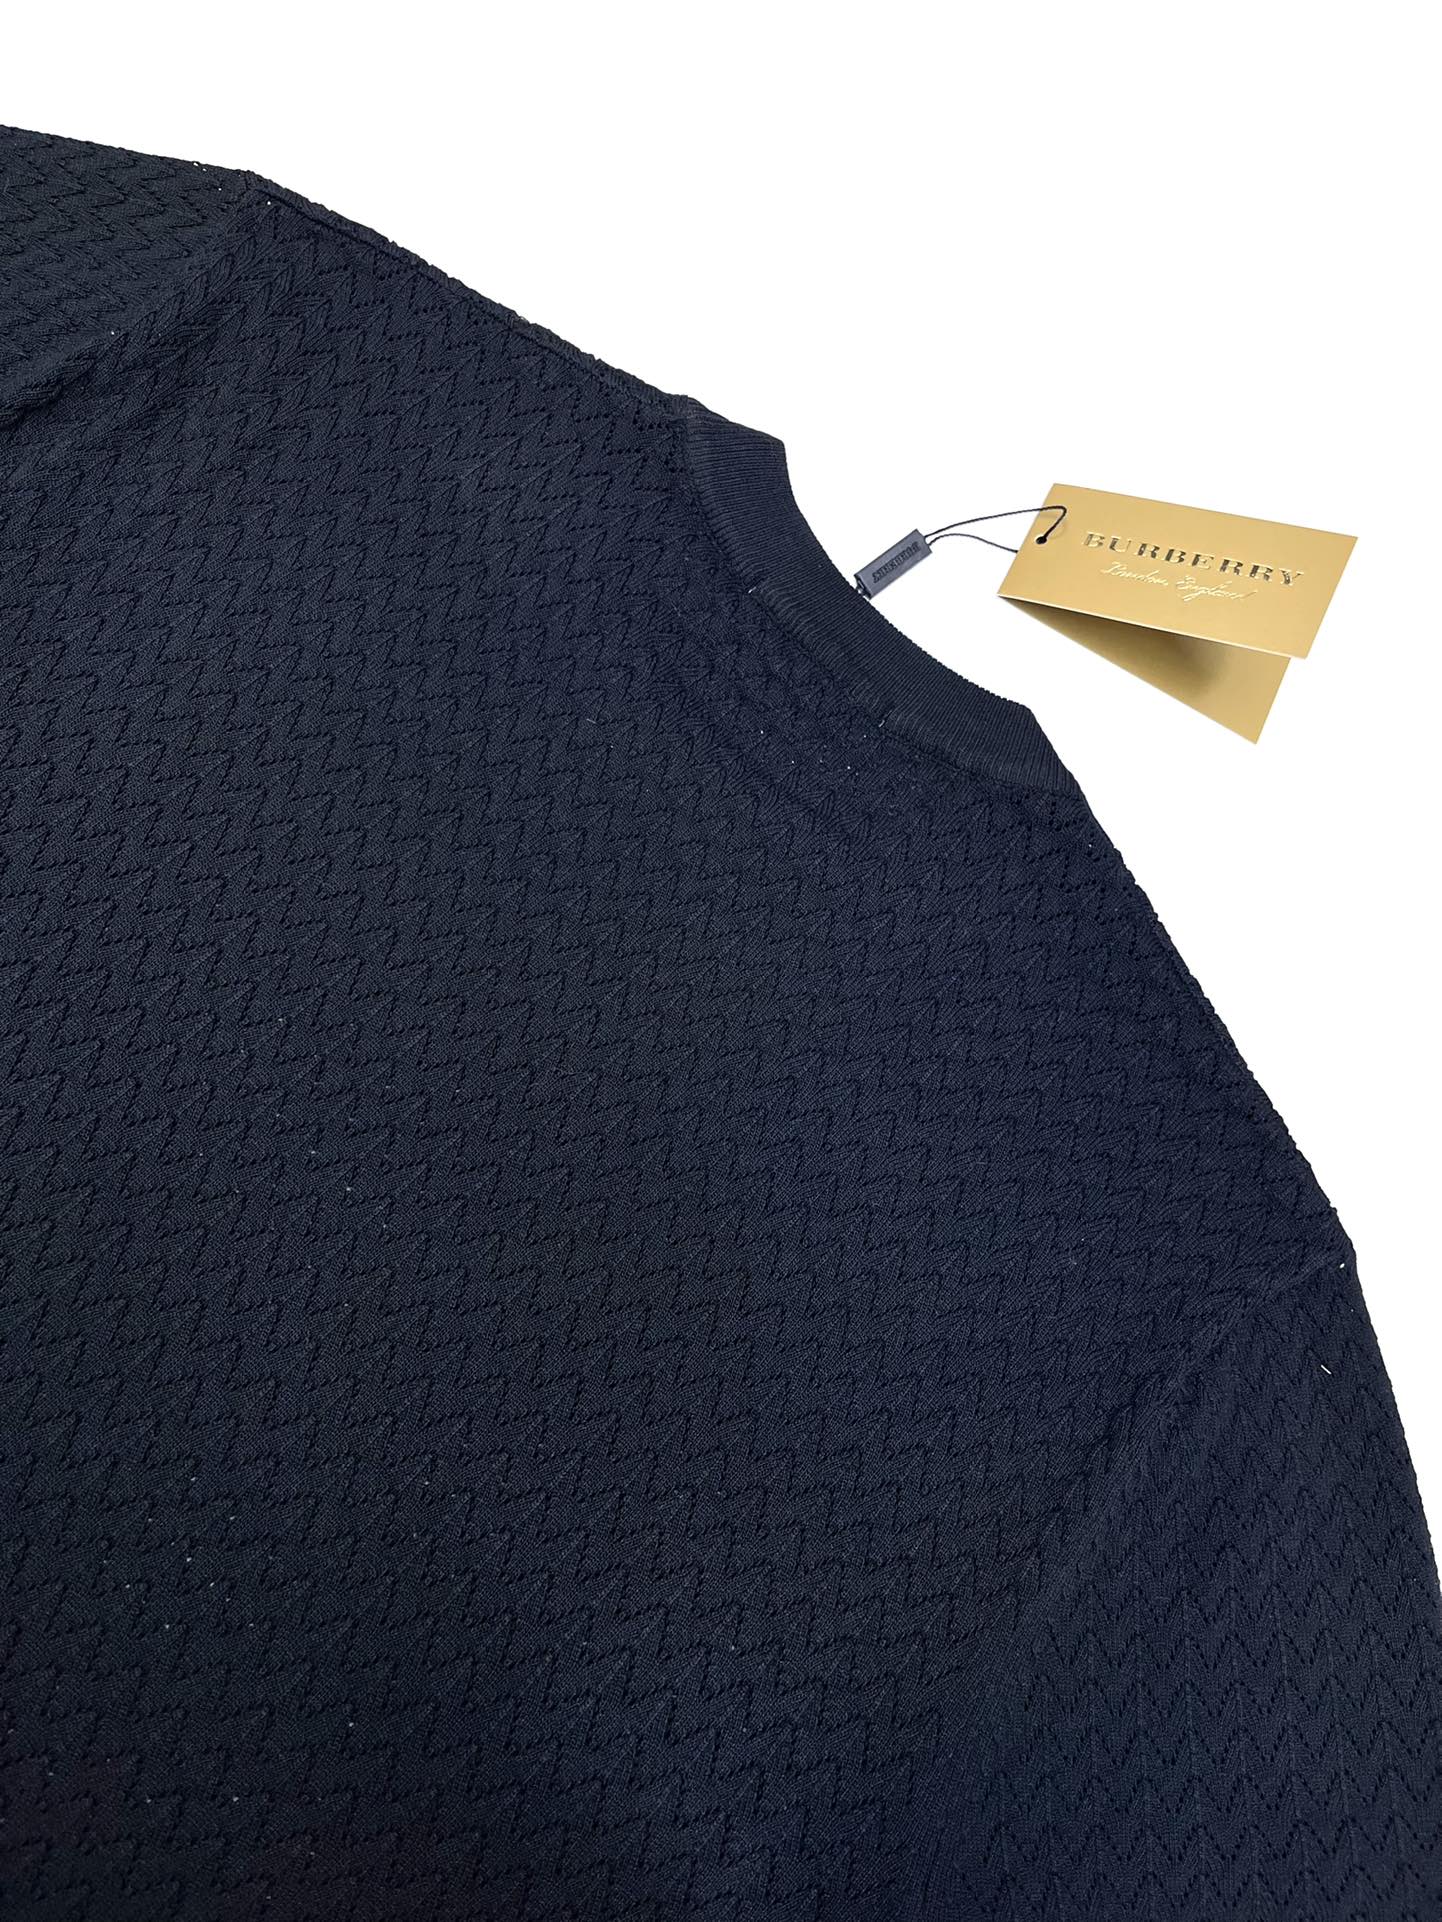 BBR*24ss新款毛衣针织短袖超经典设计简约没有任何多余累赘感衣橱不可缺少的一件百搭单品采用优质羊毛制